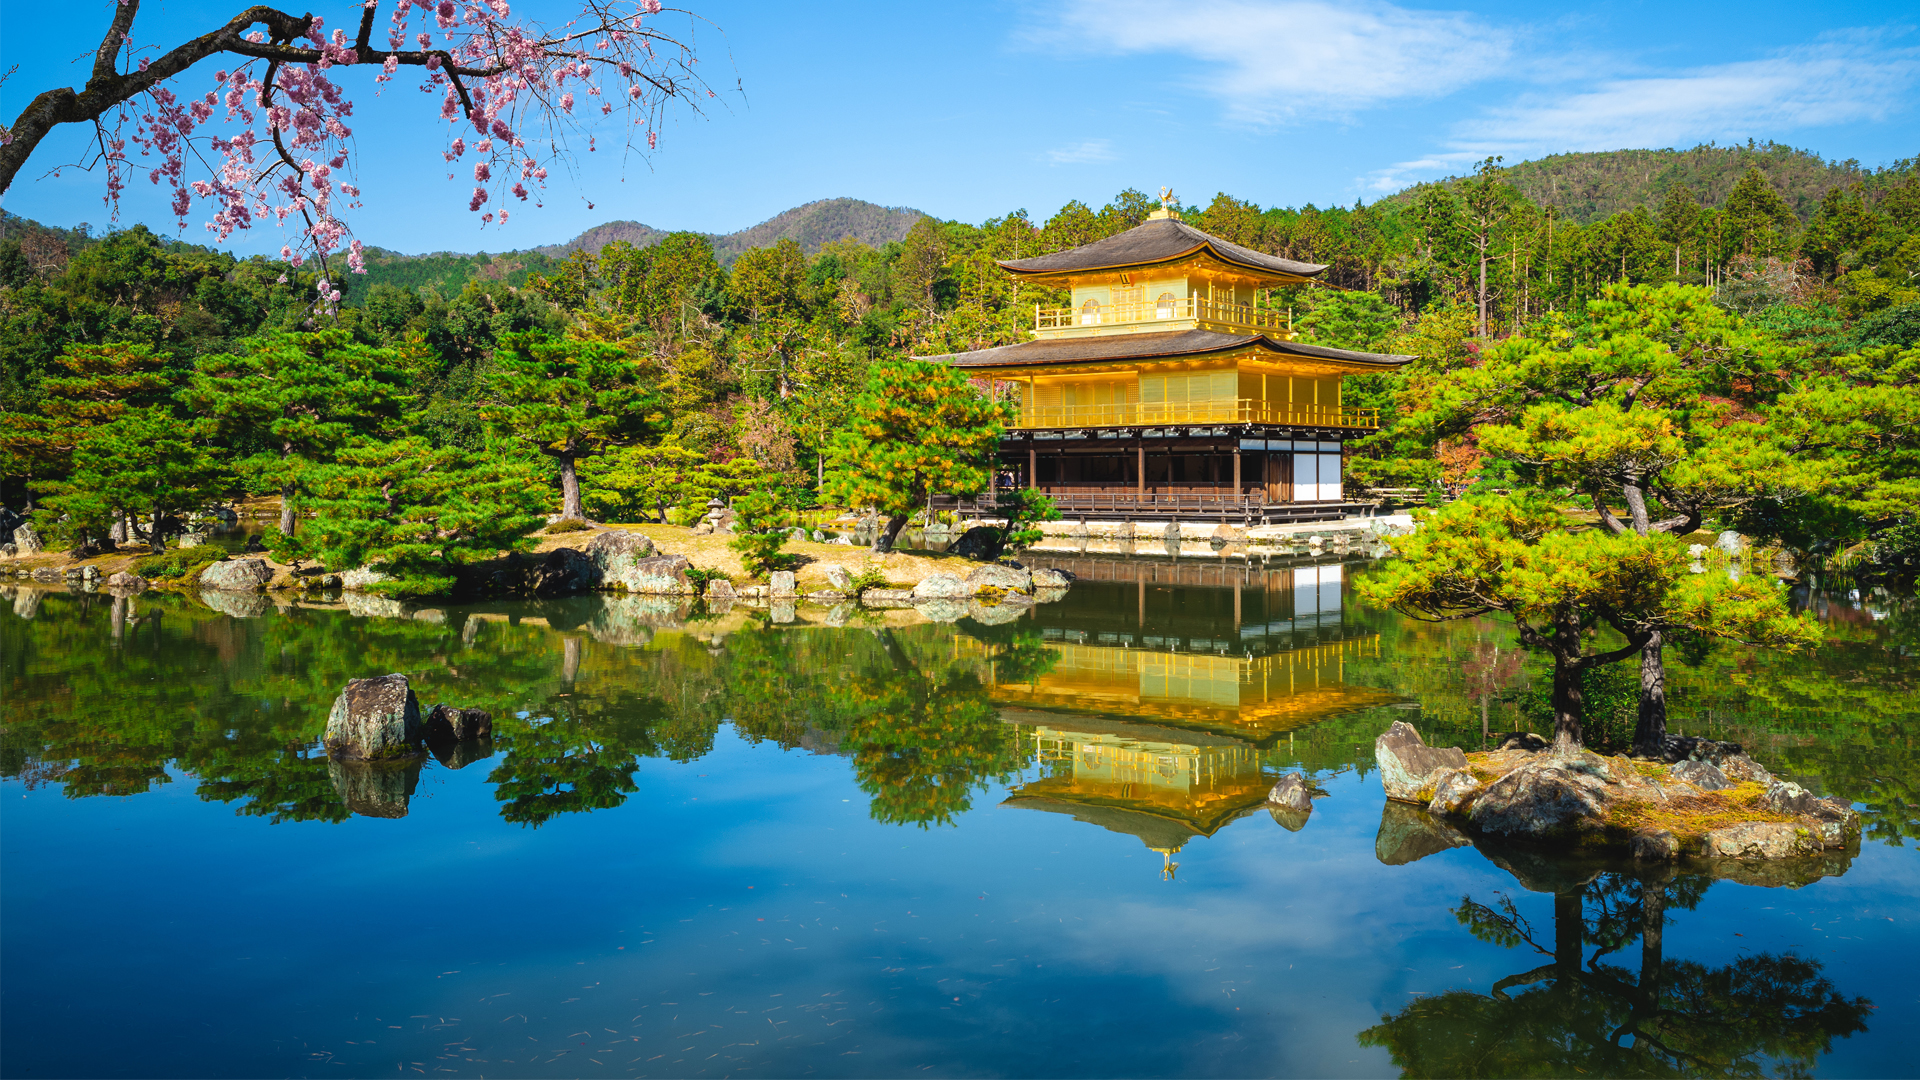 Kinkakuji at Rokuonji, aka Golden Pavilion located in Kyoto, Japan Image